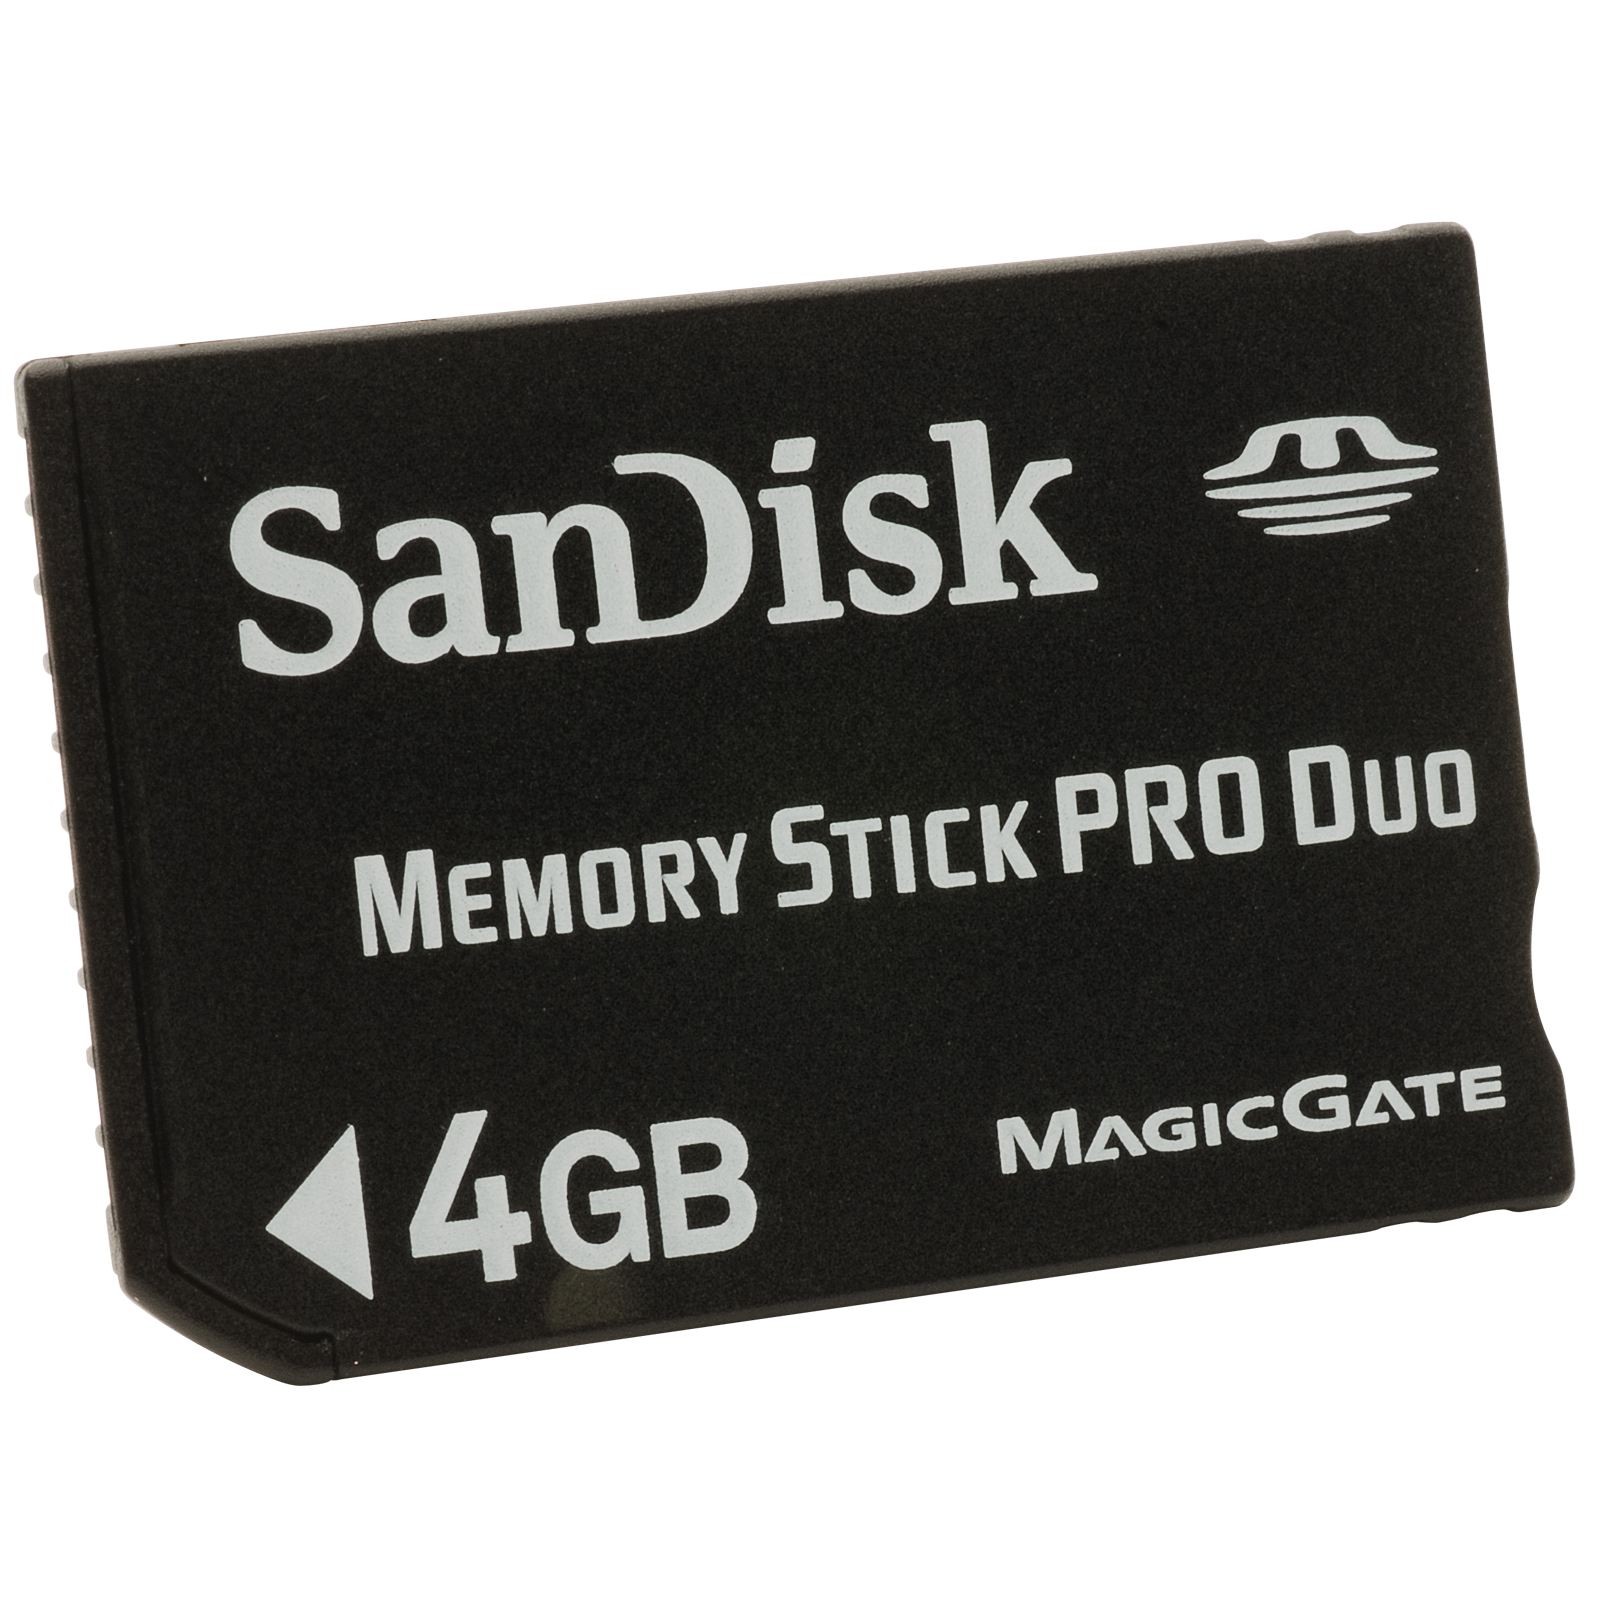 Мемори карт. Карта памяти MS Pro Duo 2 GB. Карта памяти SANDISK Memory Stick Pro Duo 2gb. Memory Card MS Pro Duo. Sony Memory Stick Pro Duo 4gb.